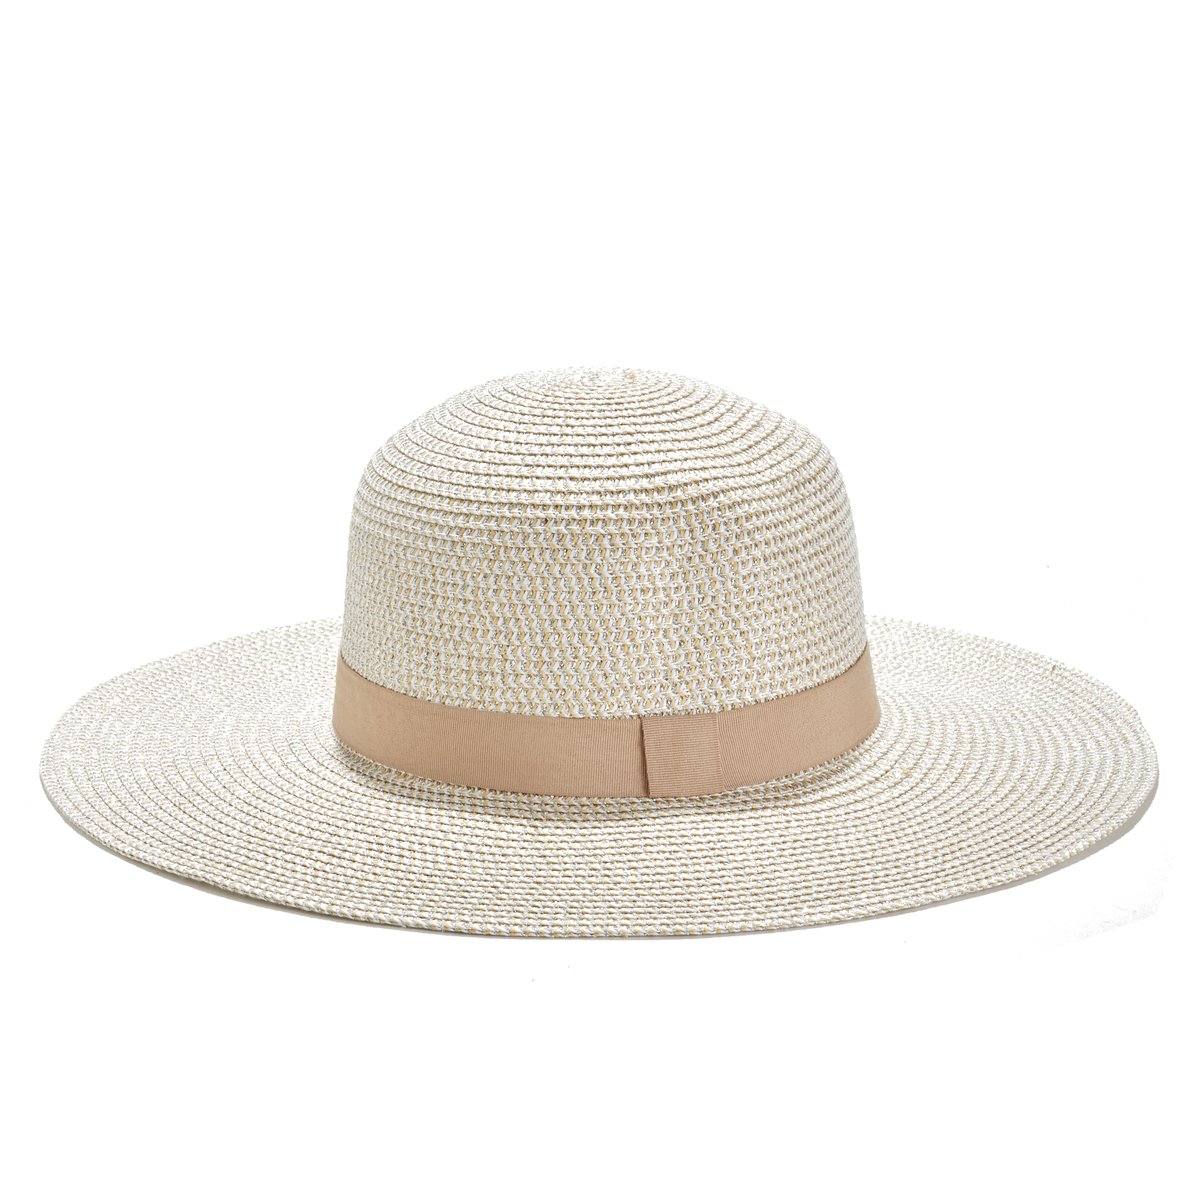 Шляпа канотье женская белая. Шляпа соломенная женская канотье на спине. La hat